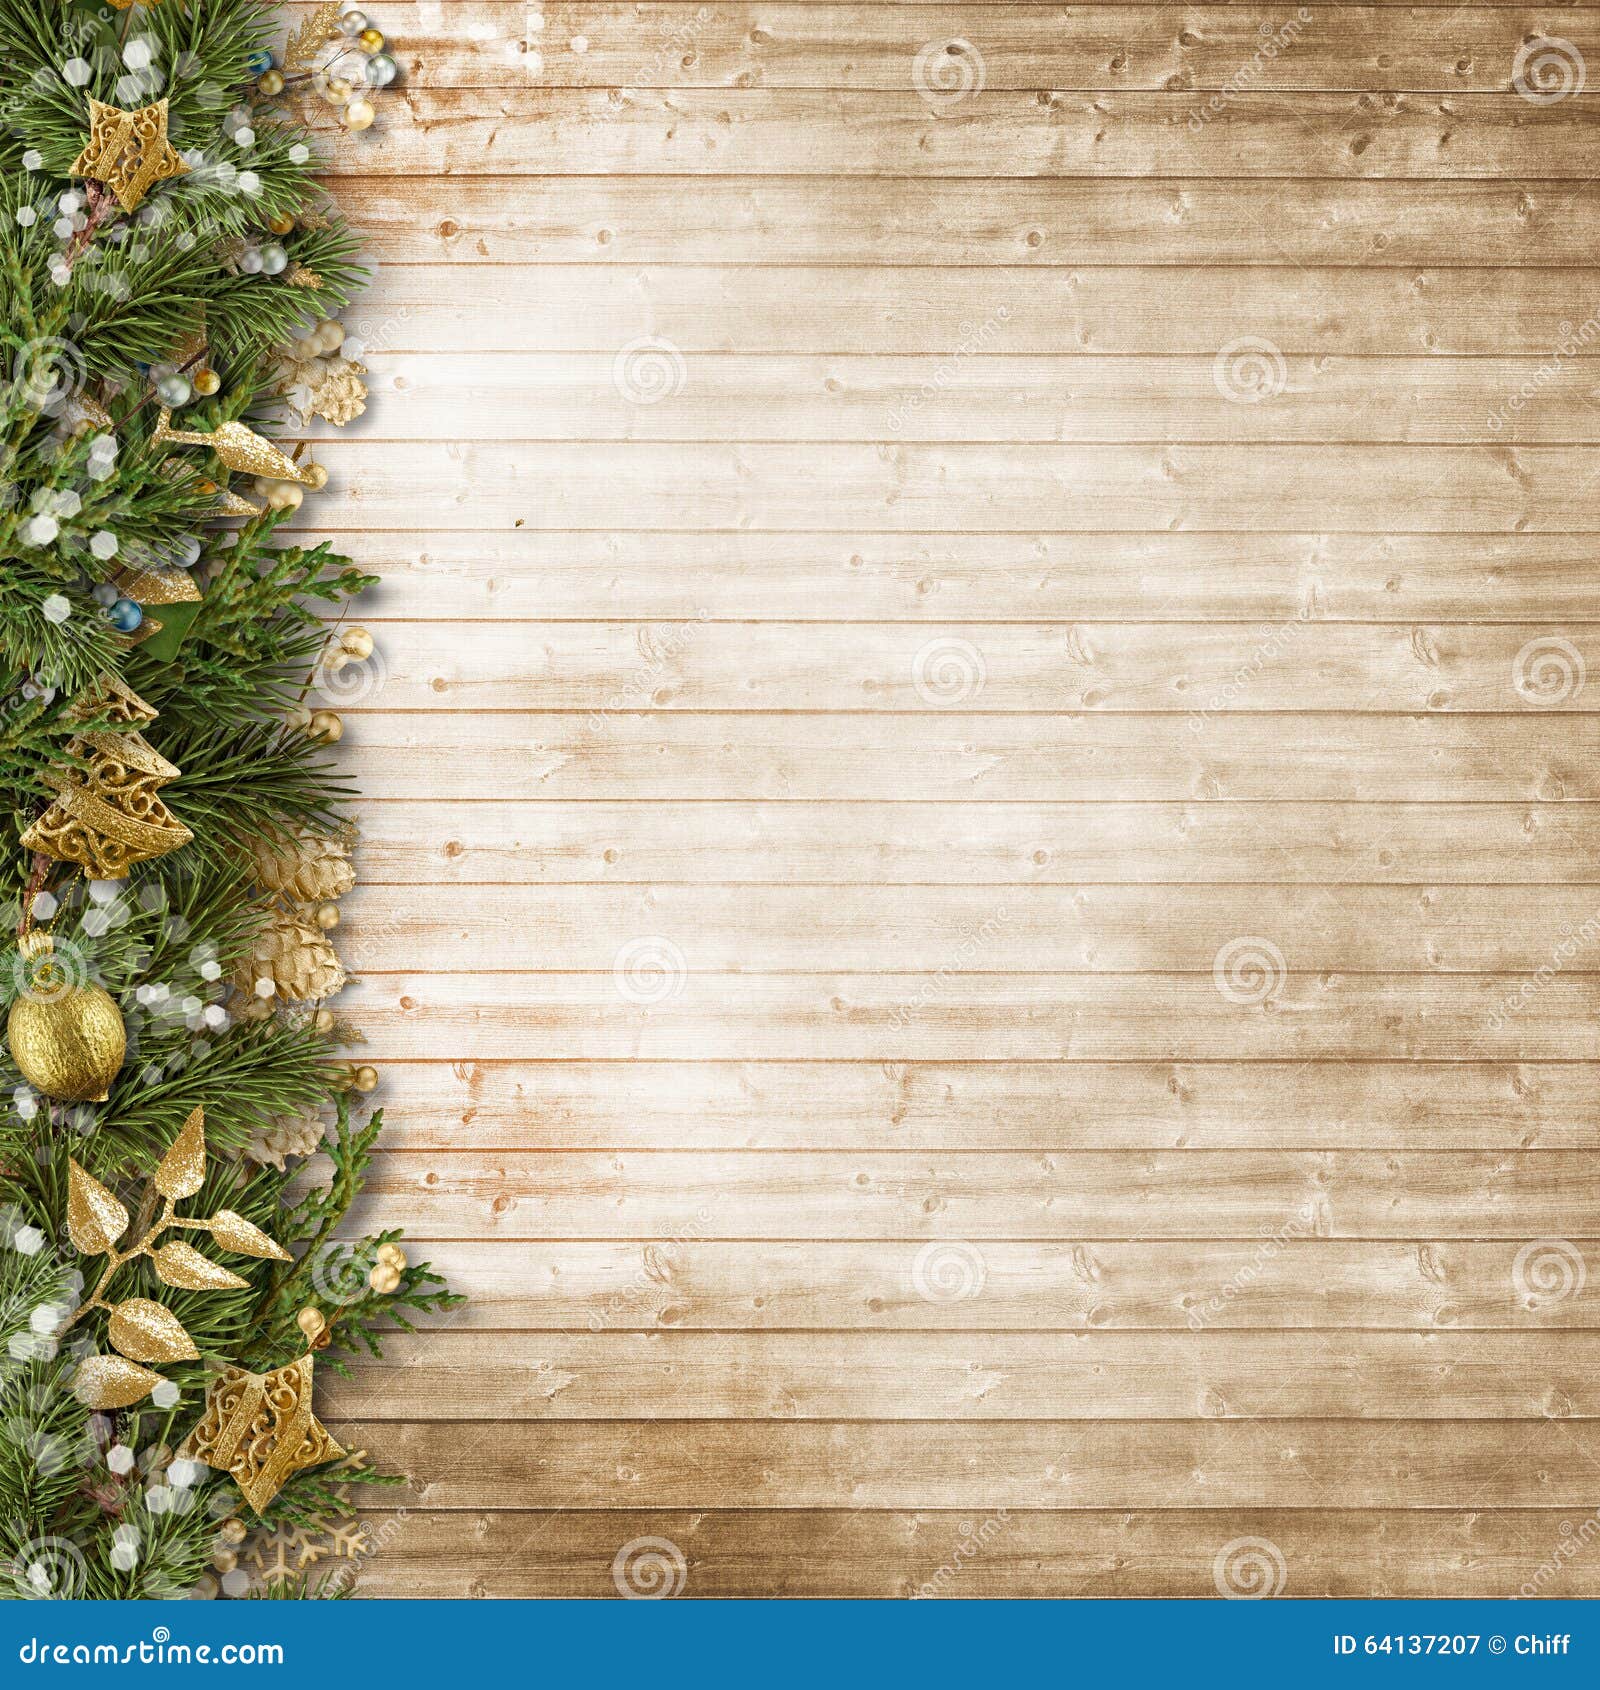 Một mẫu đường viền Giáng Sinh với trang trí cổ điển trên bảng gỗ sẽ giúp cho màn hình máy tính của bạn thêm phần sinh động và đầy cảm hứng trong mùa Giáng Sinh này. Hãy thử sử dụng để tạo ra những thiết kế độc đáo và ấn tượng.